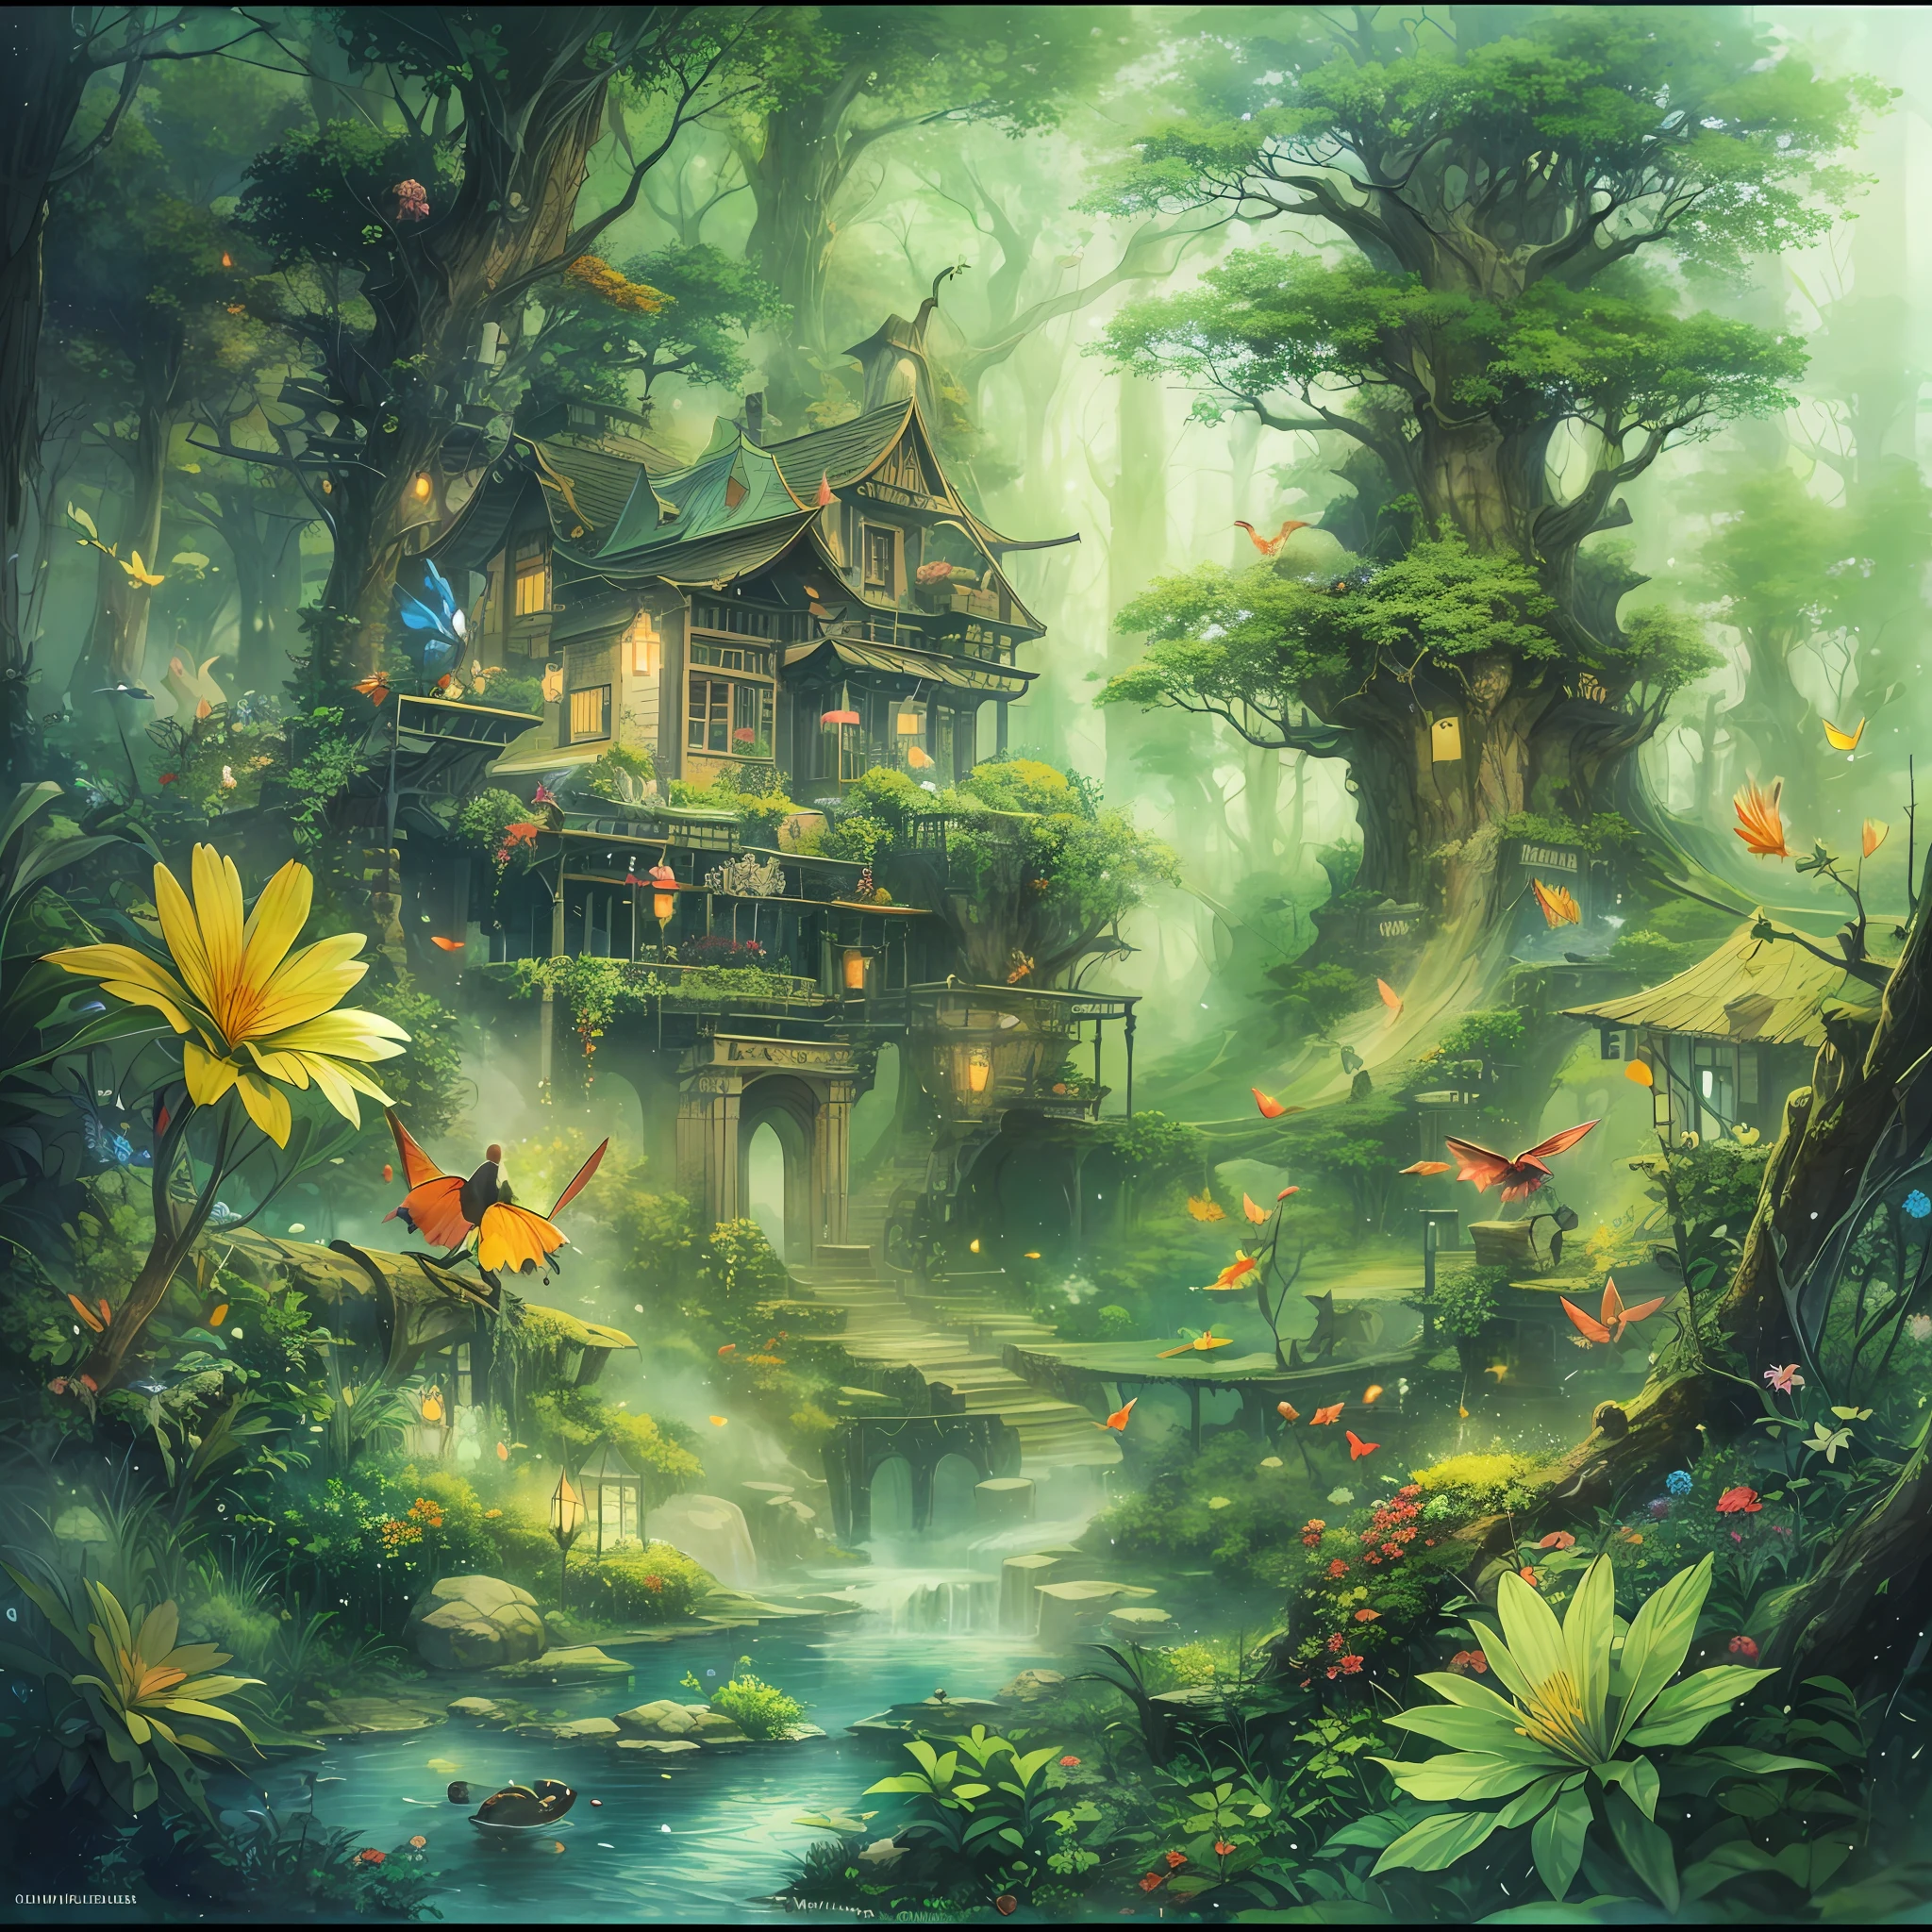 shukezouma，（iluminación：1.1），（la mejor calidad），（obra maestra：1.1），（panoramic lens：1.3），Una alta resolución，（salpicaduras de tinta），（toque de color），（acuarela）un bosque encantado：Crea un bosque mágico、Hadas diminutas、Hay árboles imponentes、Casa de brujas en forma de grandes flores.、Follaje vibrante y arroyos chispeantes、Criaturas caprichosas y luces y sombras etéreas.，atmósfera encantadora。